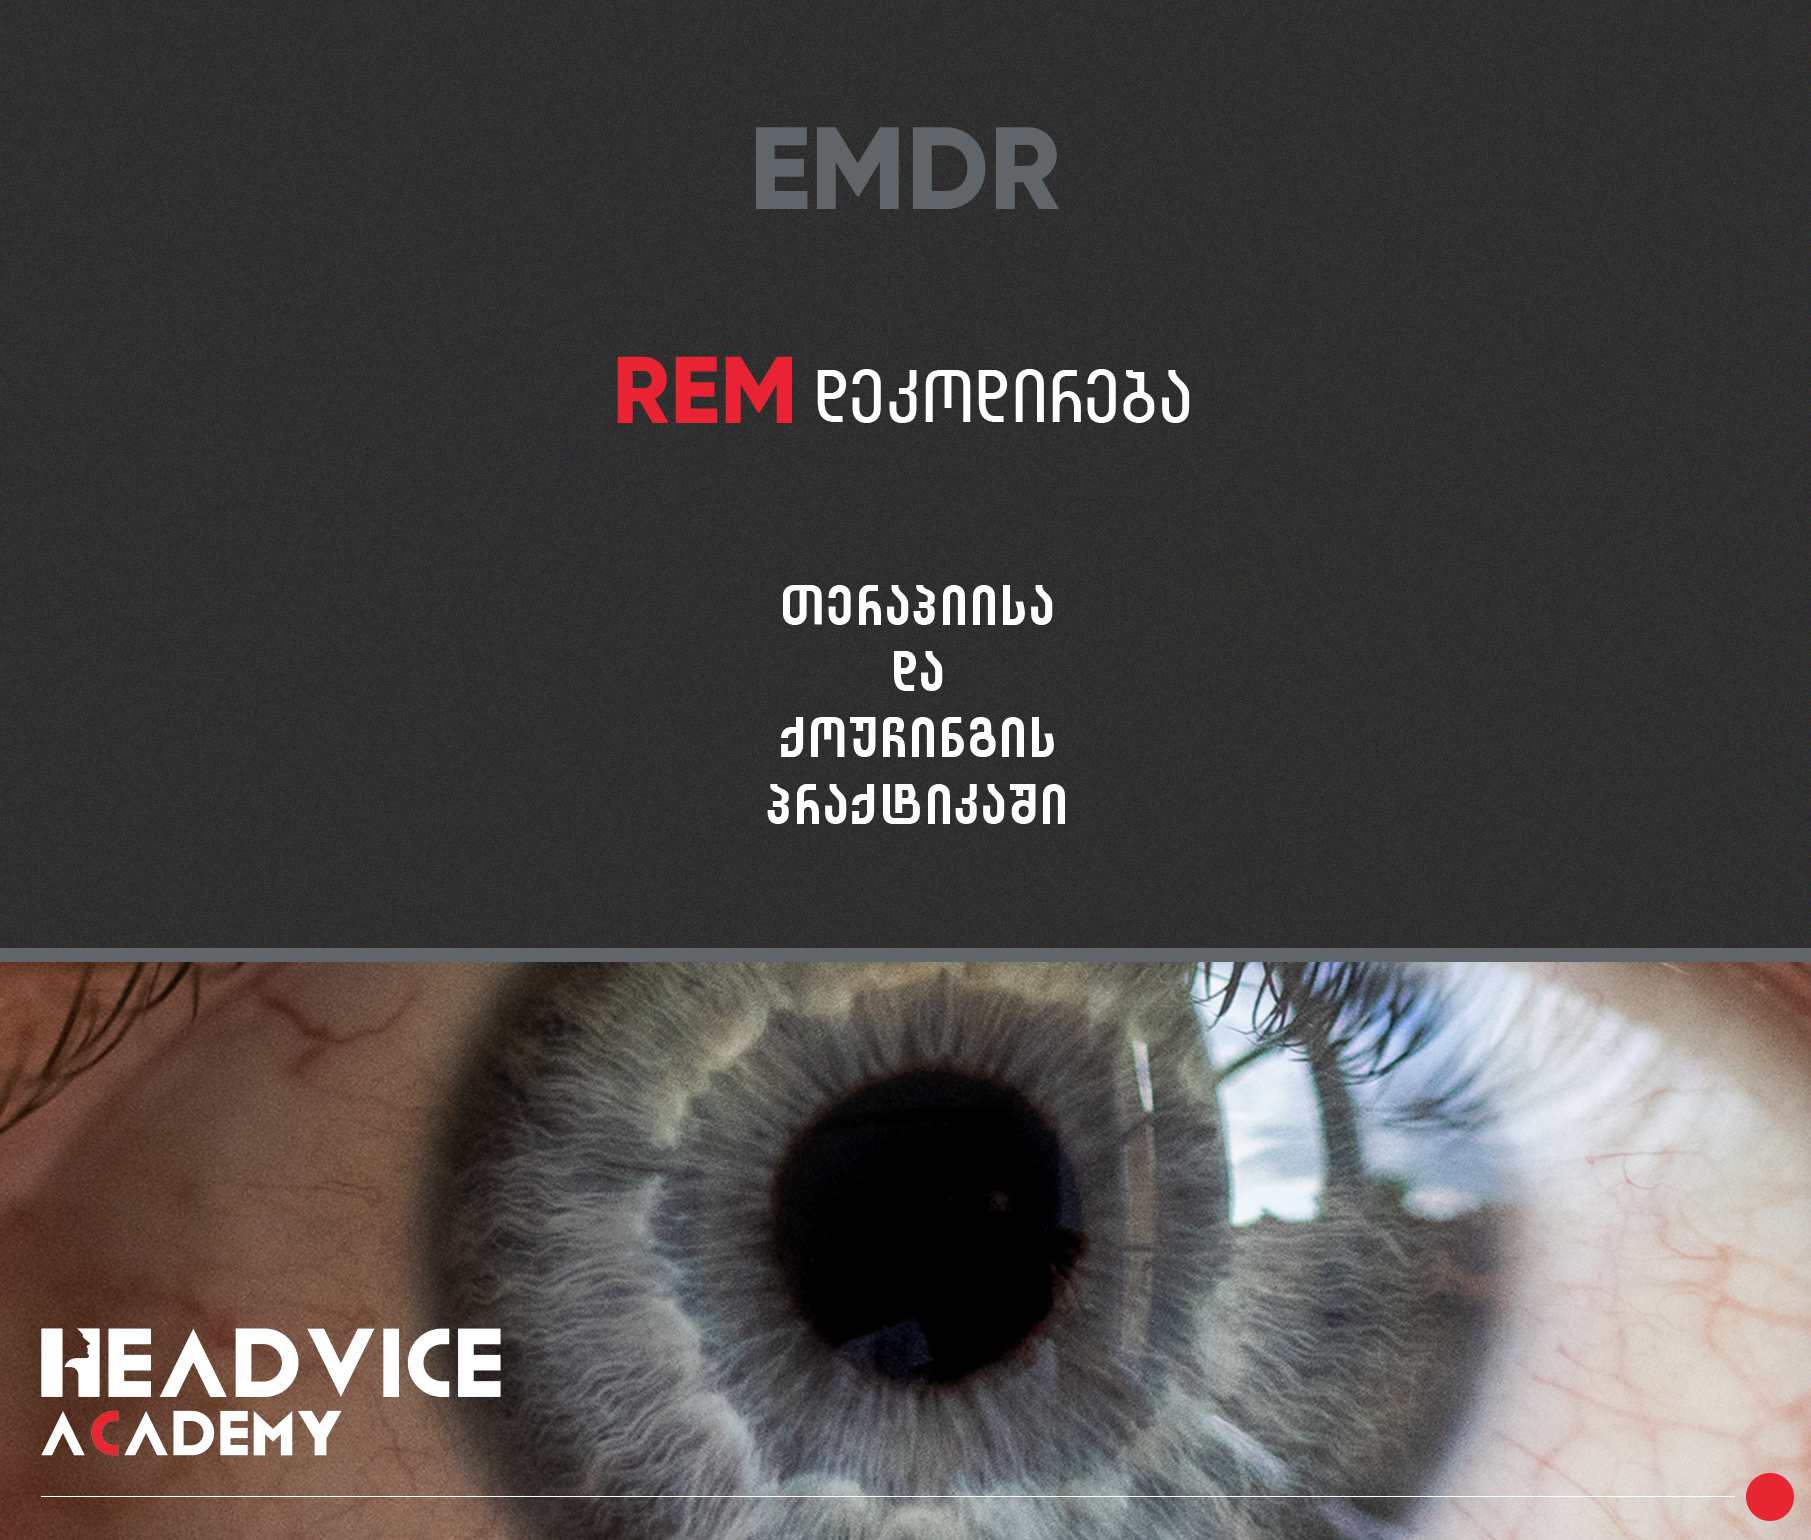 REM დეკოდირება (EMDR)